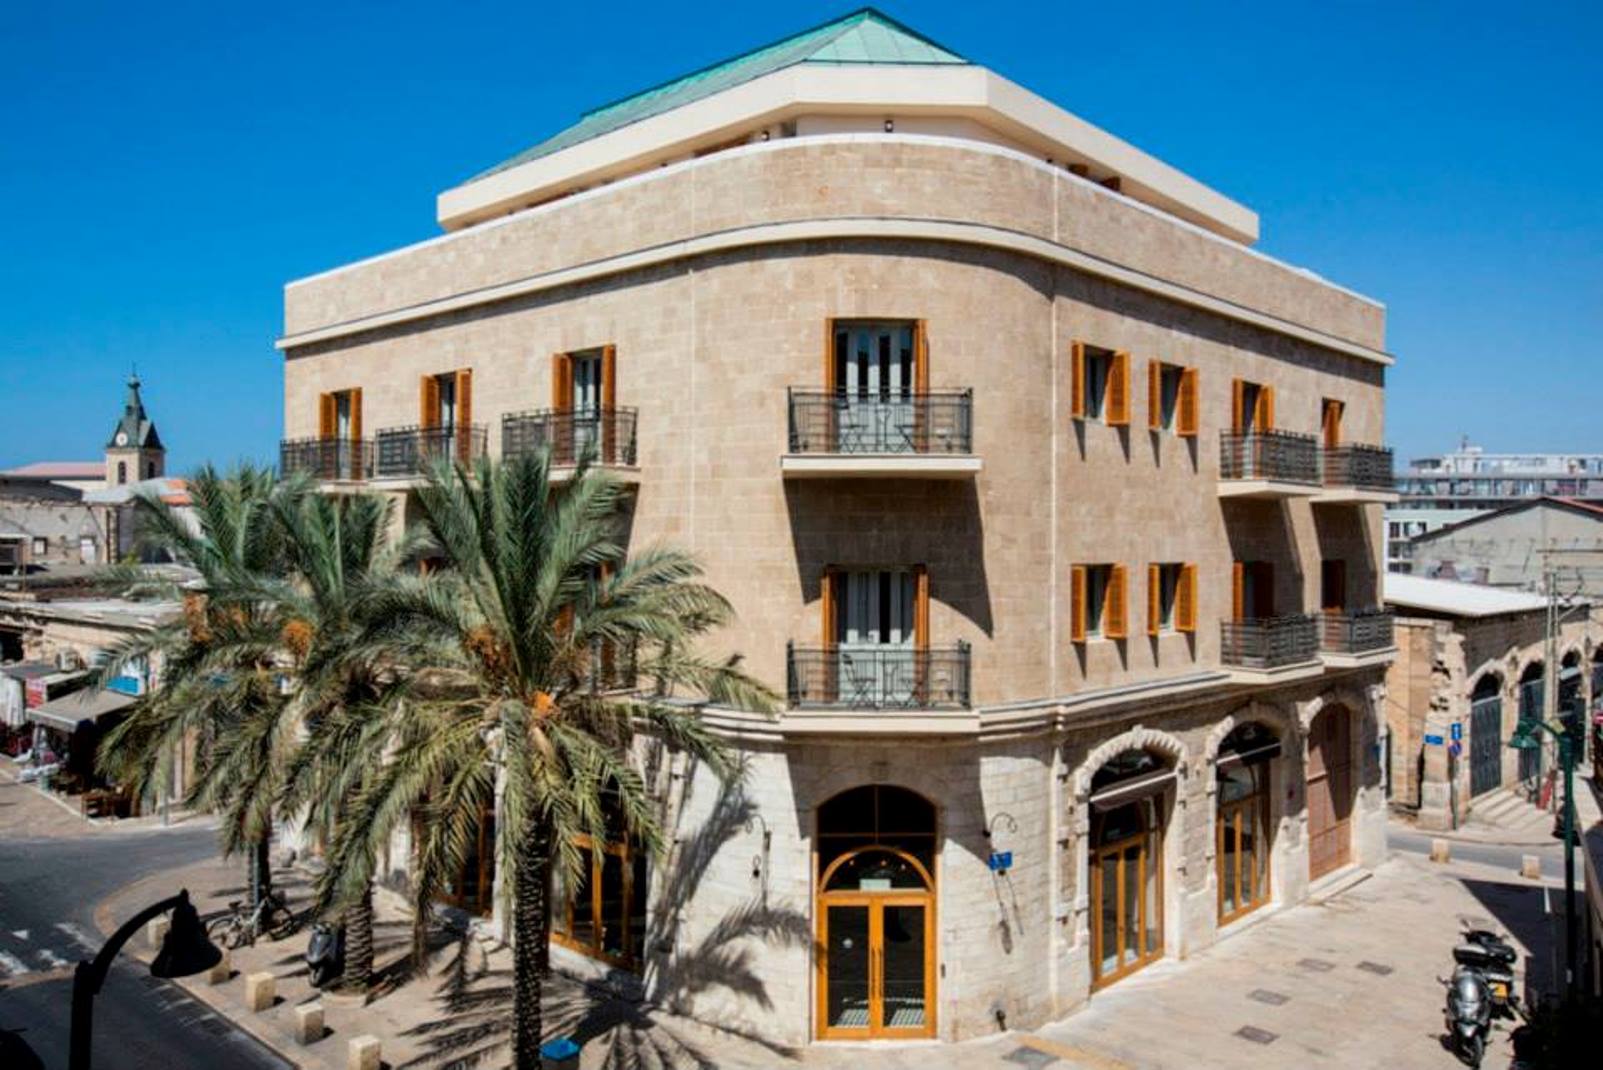 Market House Hotel, Jaffa. Photo: courtesy